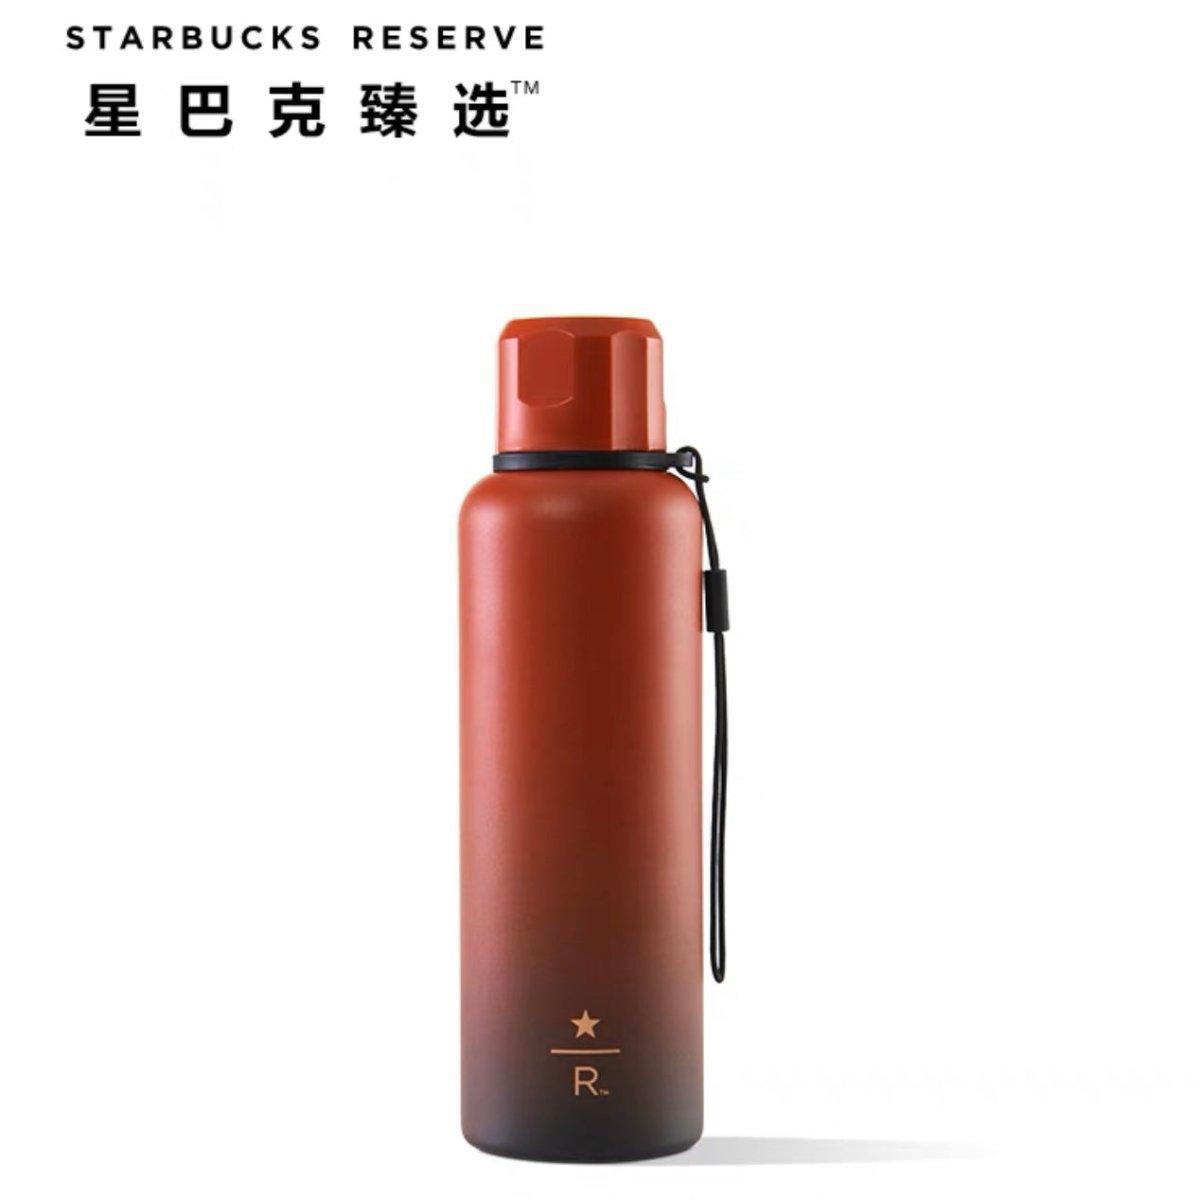 Starbucks Reserve Red and Black Gradient Stainless Steel Bottle 591ml/20oz - Ann Ann Starbucks